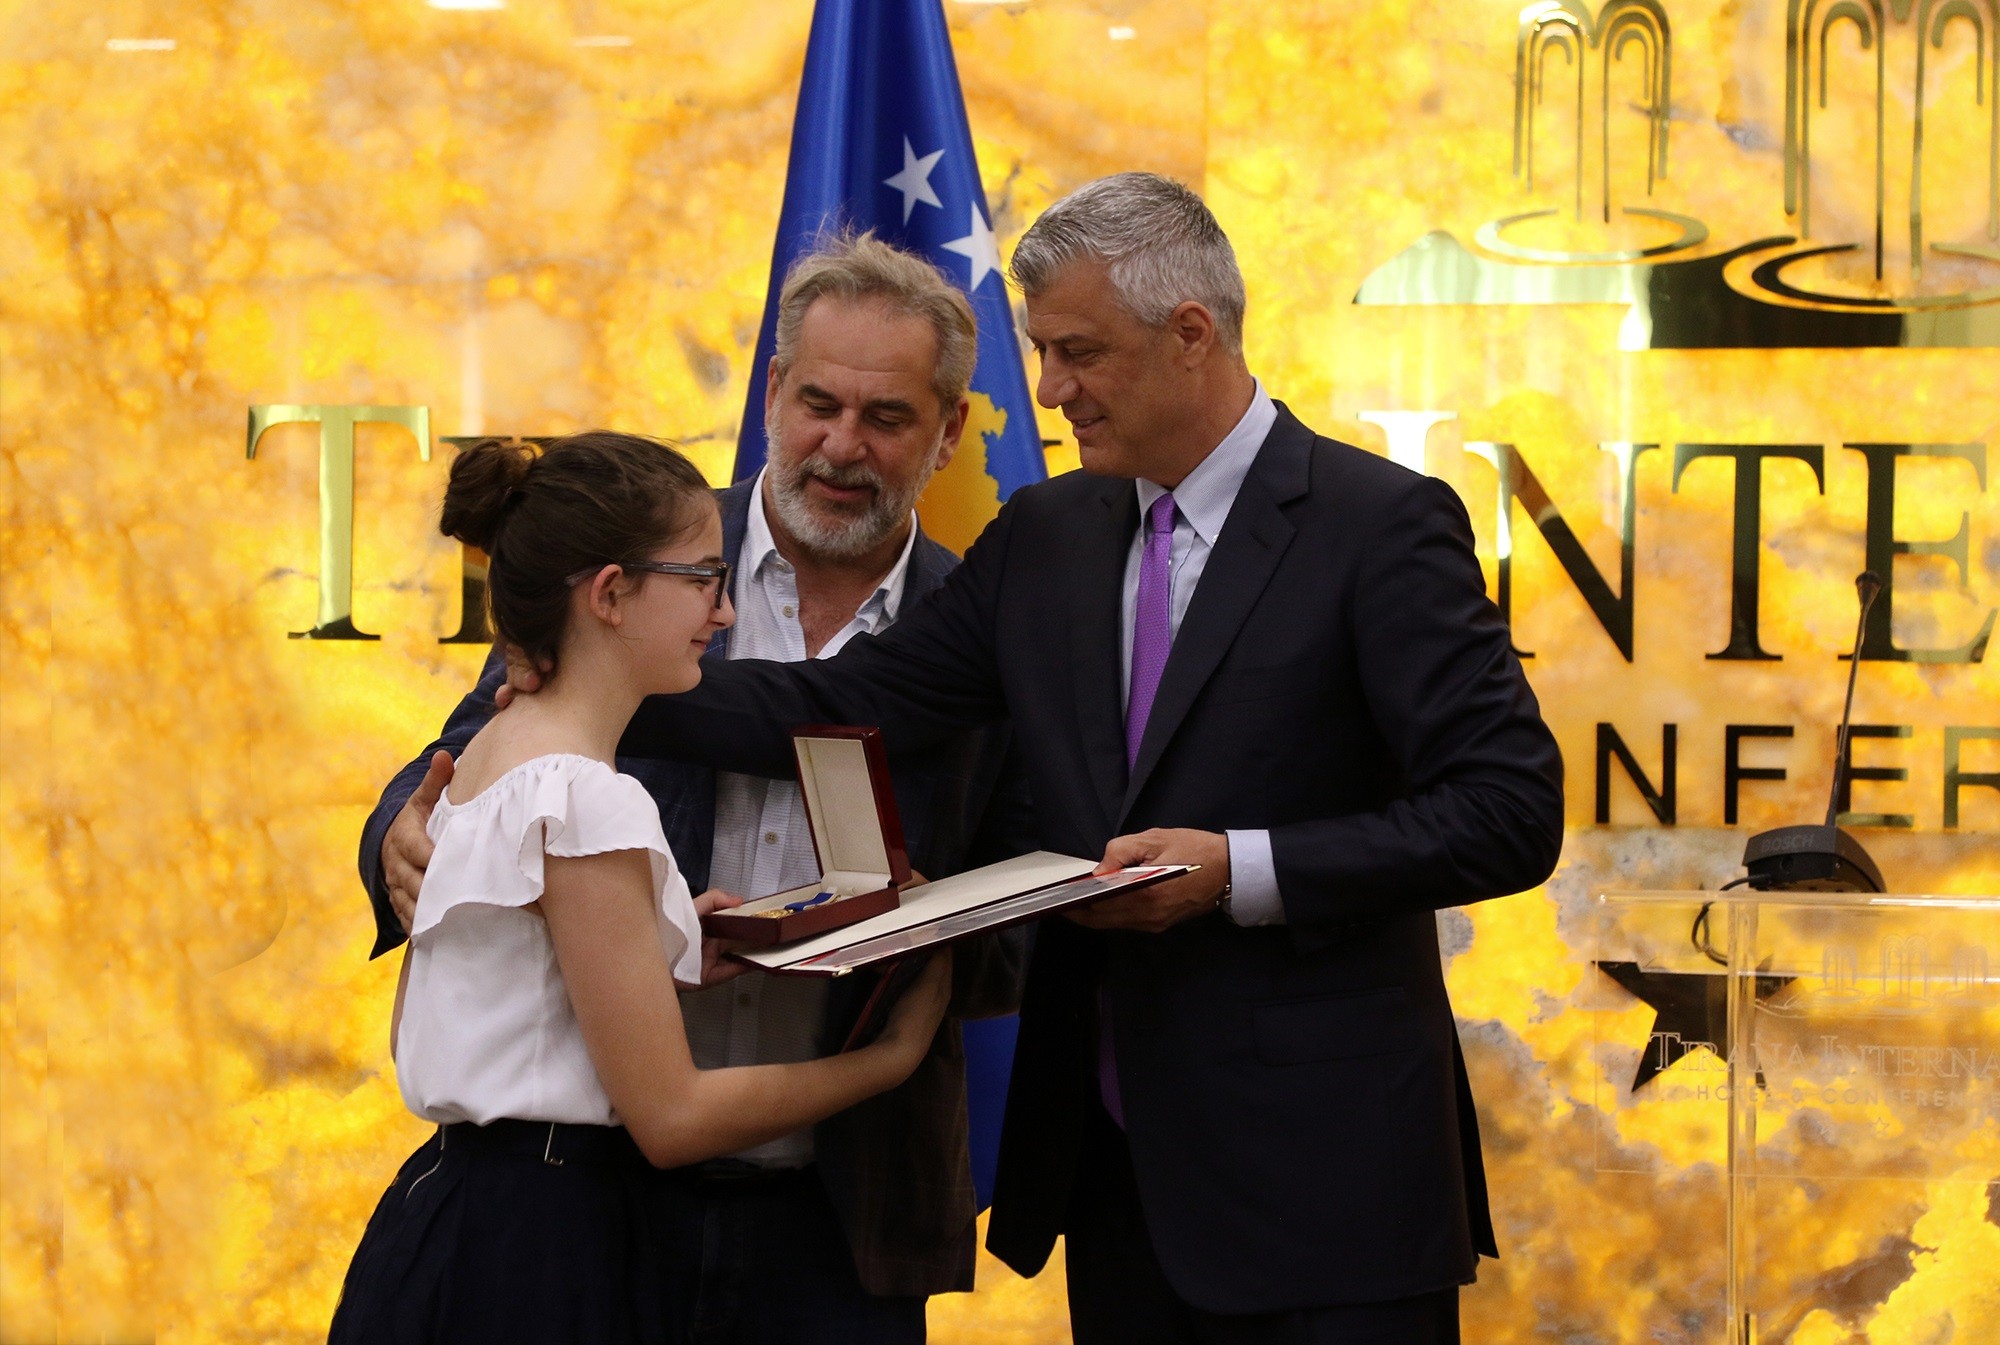 Presidenti Thaçi dekoron edhe 50 personalitete në Shqipëri 